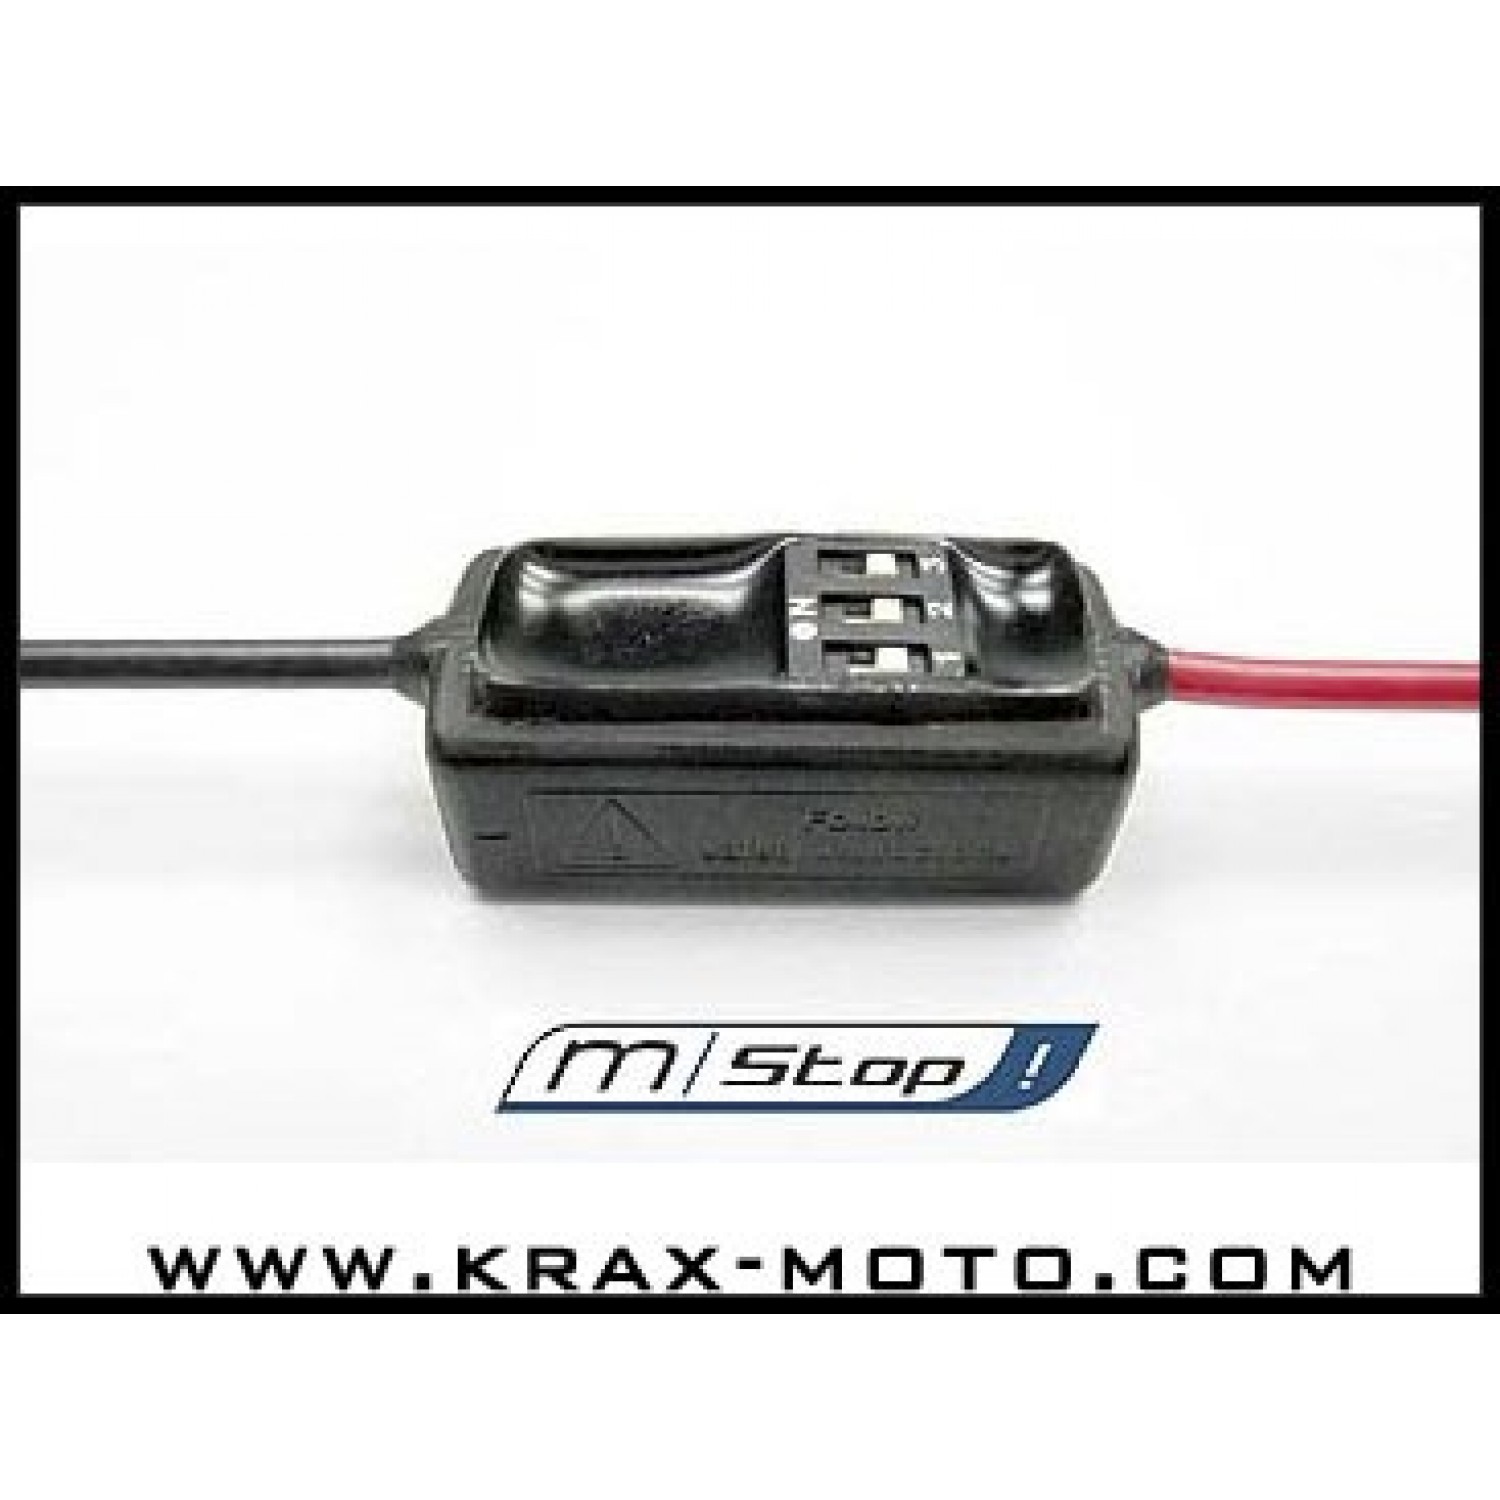 Centrale clignotantes électronique Chaft - Krax-Moto